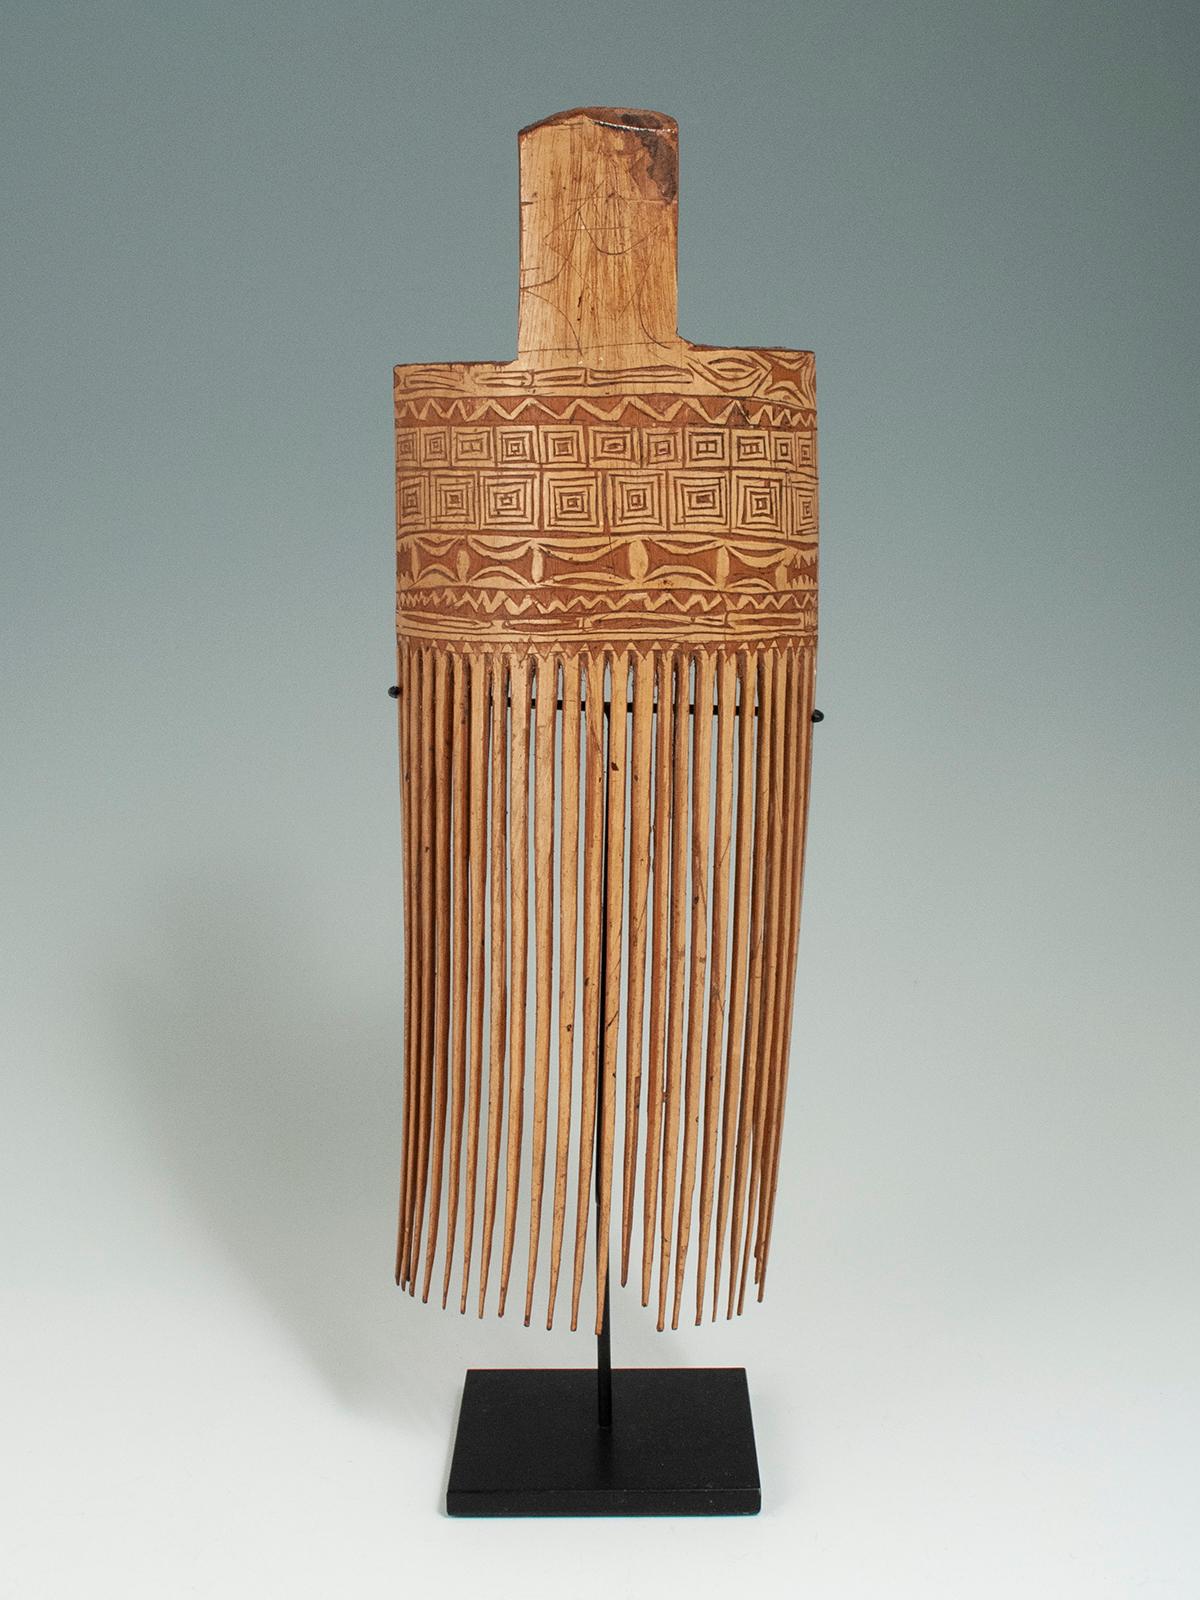 Peigne en bambou incisé datant du milieu ou de la fin du 20e siècle, golfe de Huon, province de Morobe, Papouasie-Nouvelle-Guinée

Ce grand peigne incisé est typique des peignes en bambou de la région du golfe de Huon. Cet exemple particulier